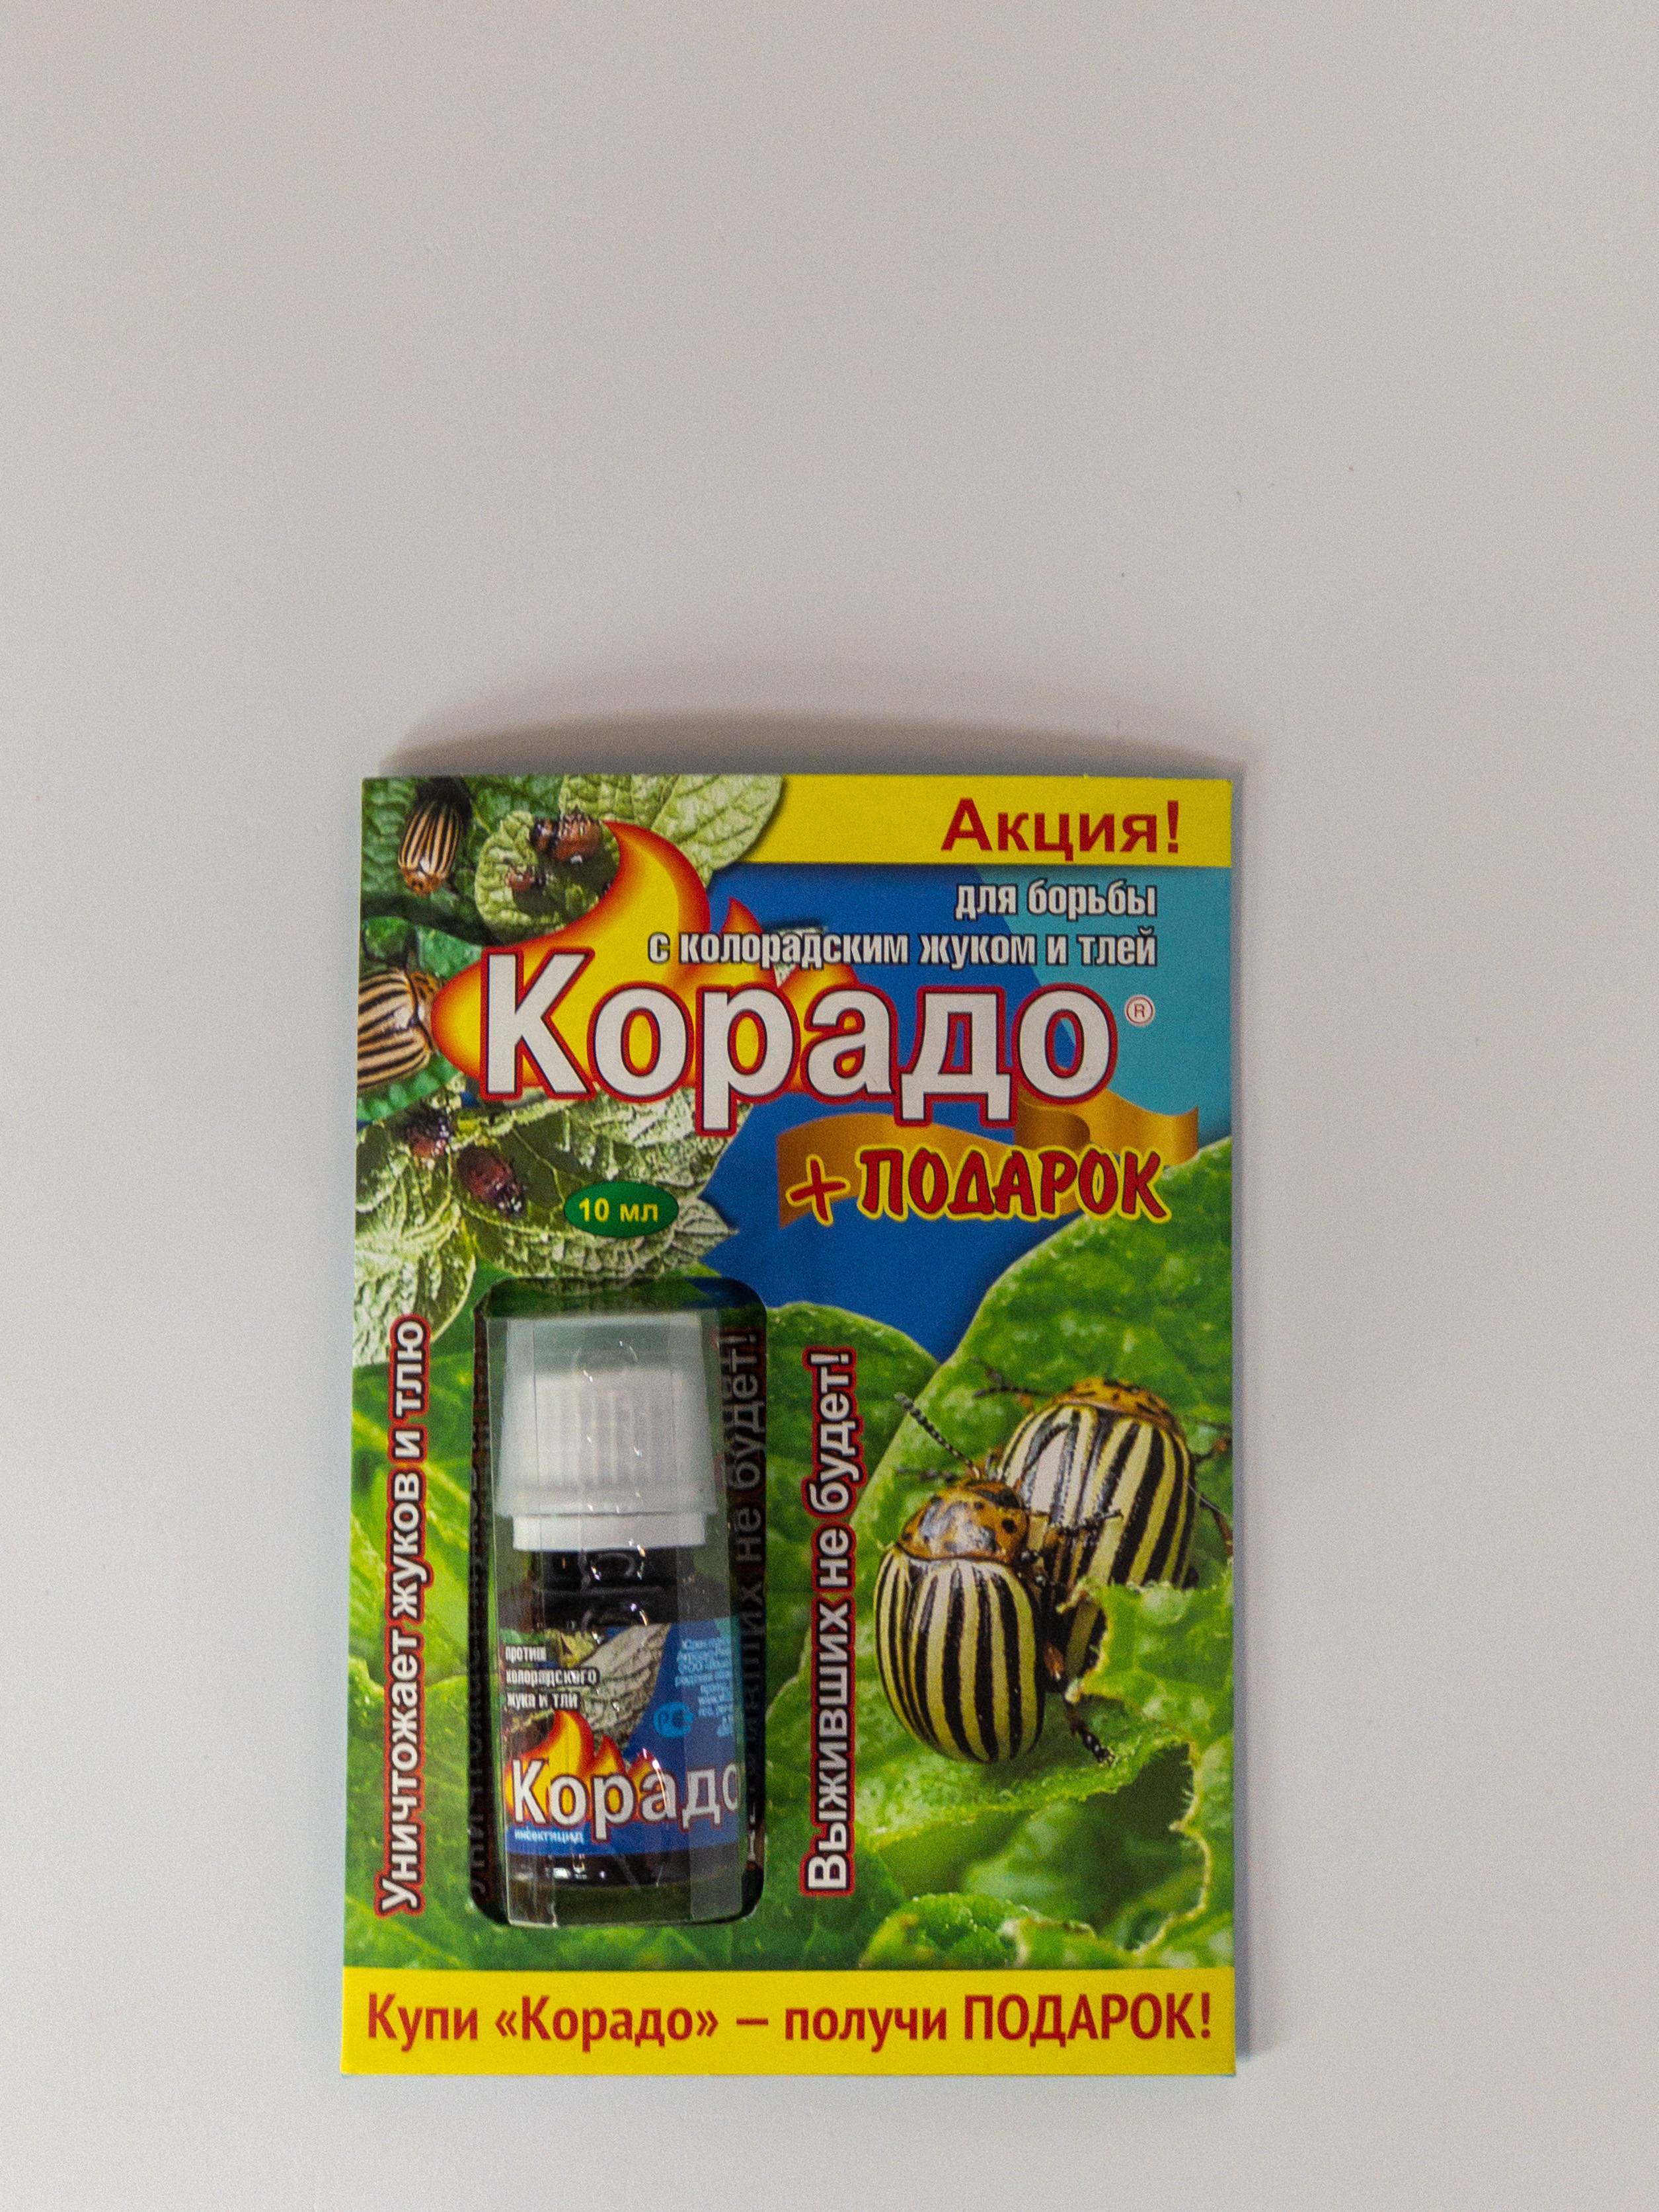 Корадо, препарат для борьбы с колорадским жуком и тлей